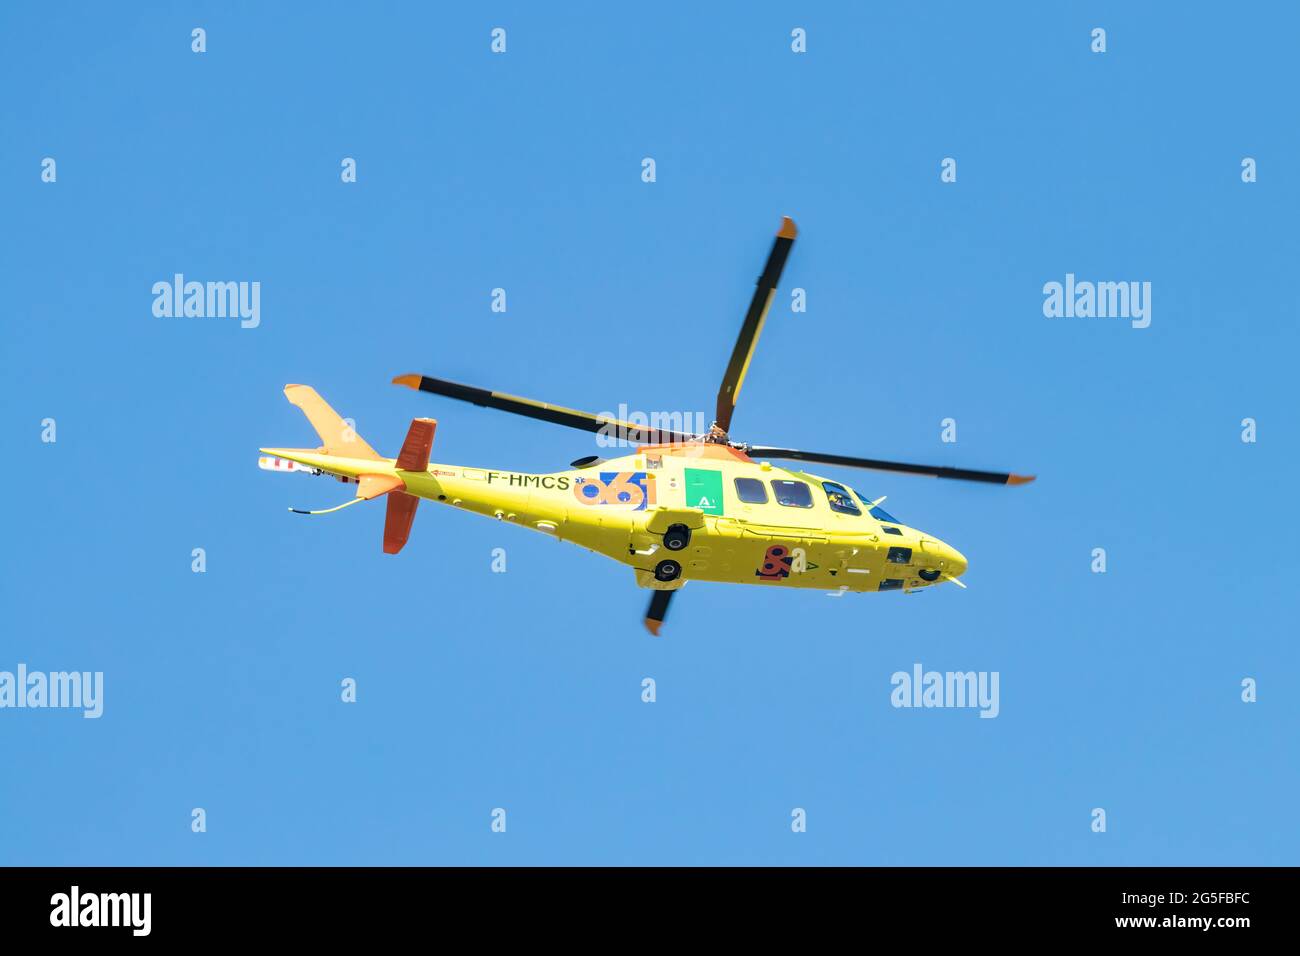 Huelva, Espagne - 26 juin 2021 : AgustaWestland A109S Grand appartenant à la flotte d'hélicoptères 061 de la Junta de Andalucía. Hélicoptère médicalisé Banque D'Images